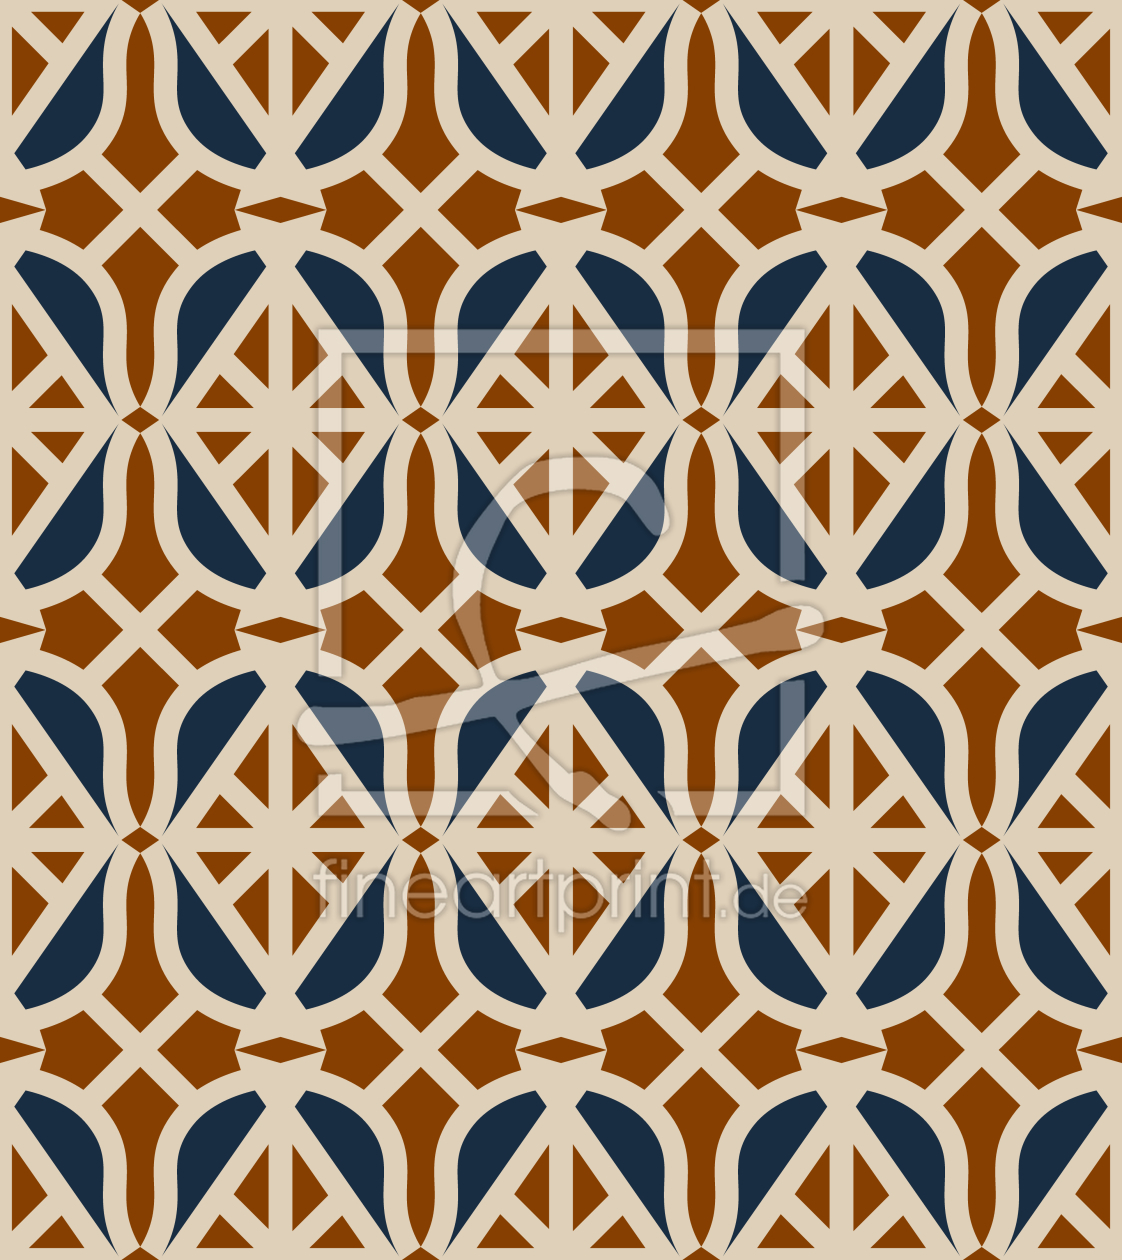 Bild-Nr.: 9013439 Art-Deco-Rauten erstellt von patterndesigns-com